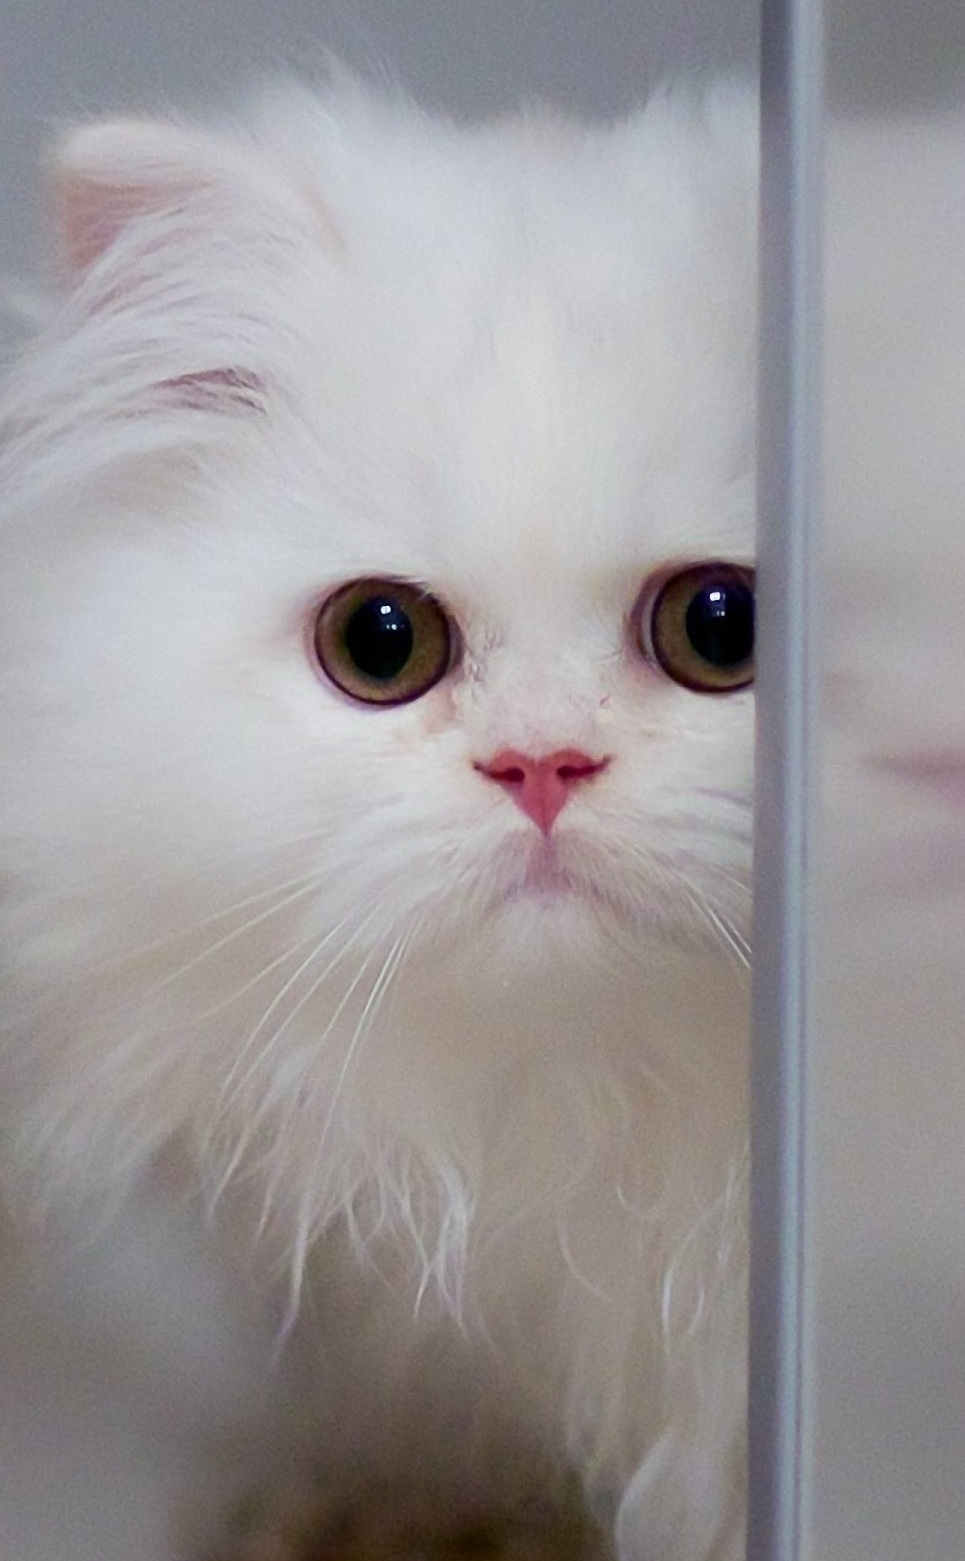 a-beauty-playful-and-fluffy-kitten-wallpaper-background.jpg